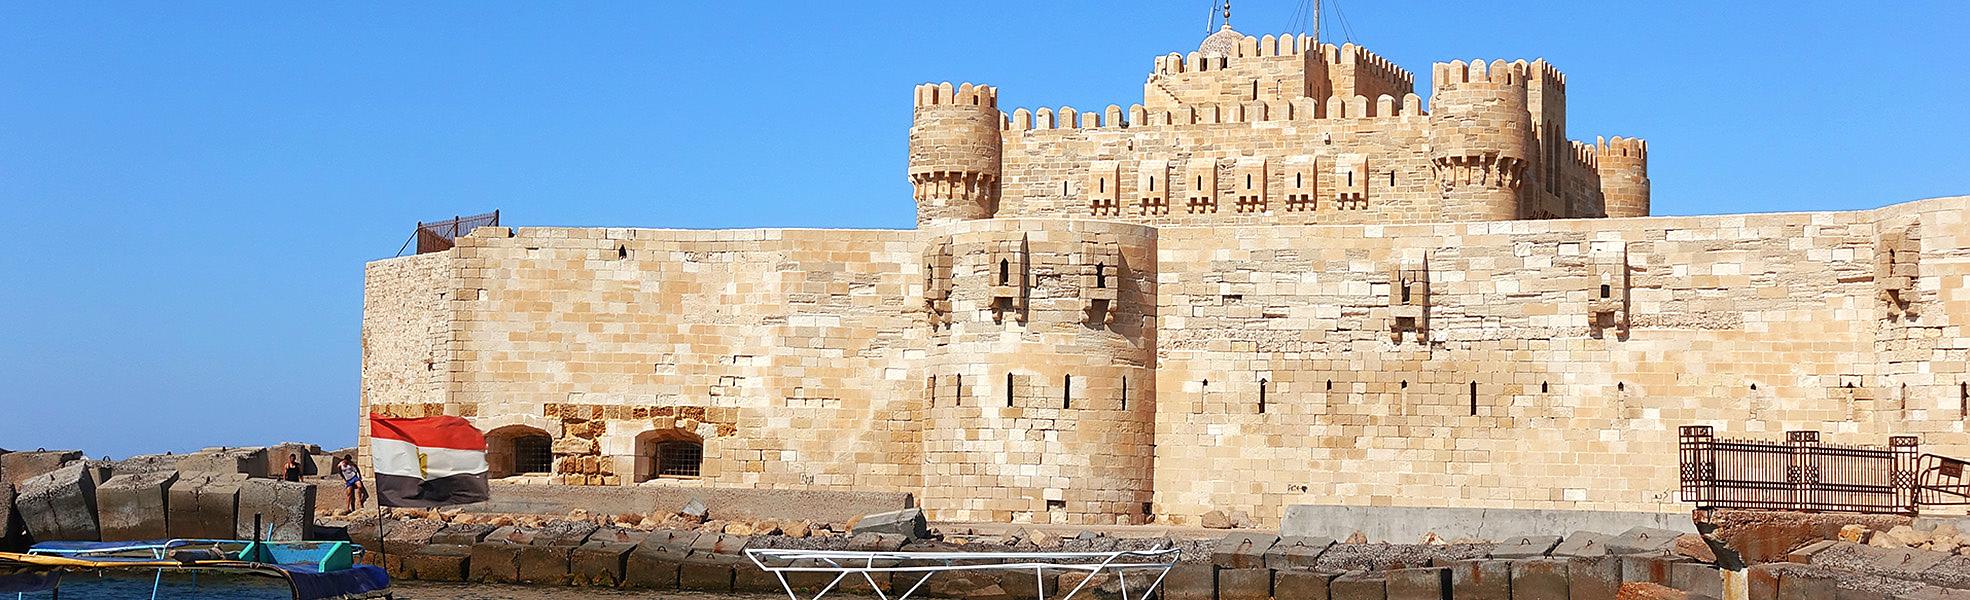 Citadel of Qait Bey